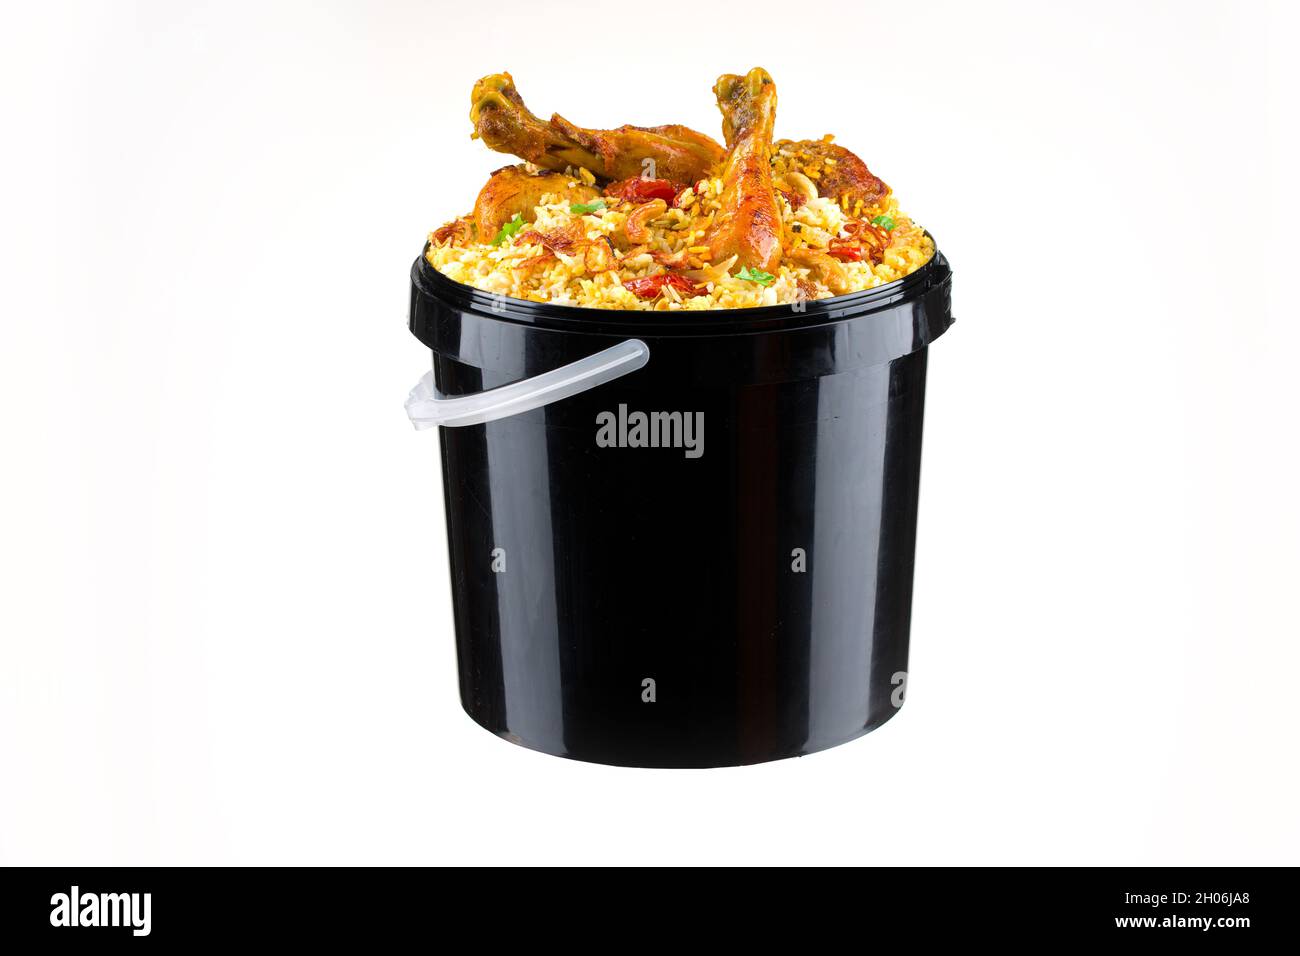 Chicken Bucket Biryani, Kerala dum chicken biryani arranged in a black bucket container with white textured background. Stock Photo